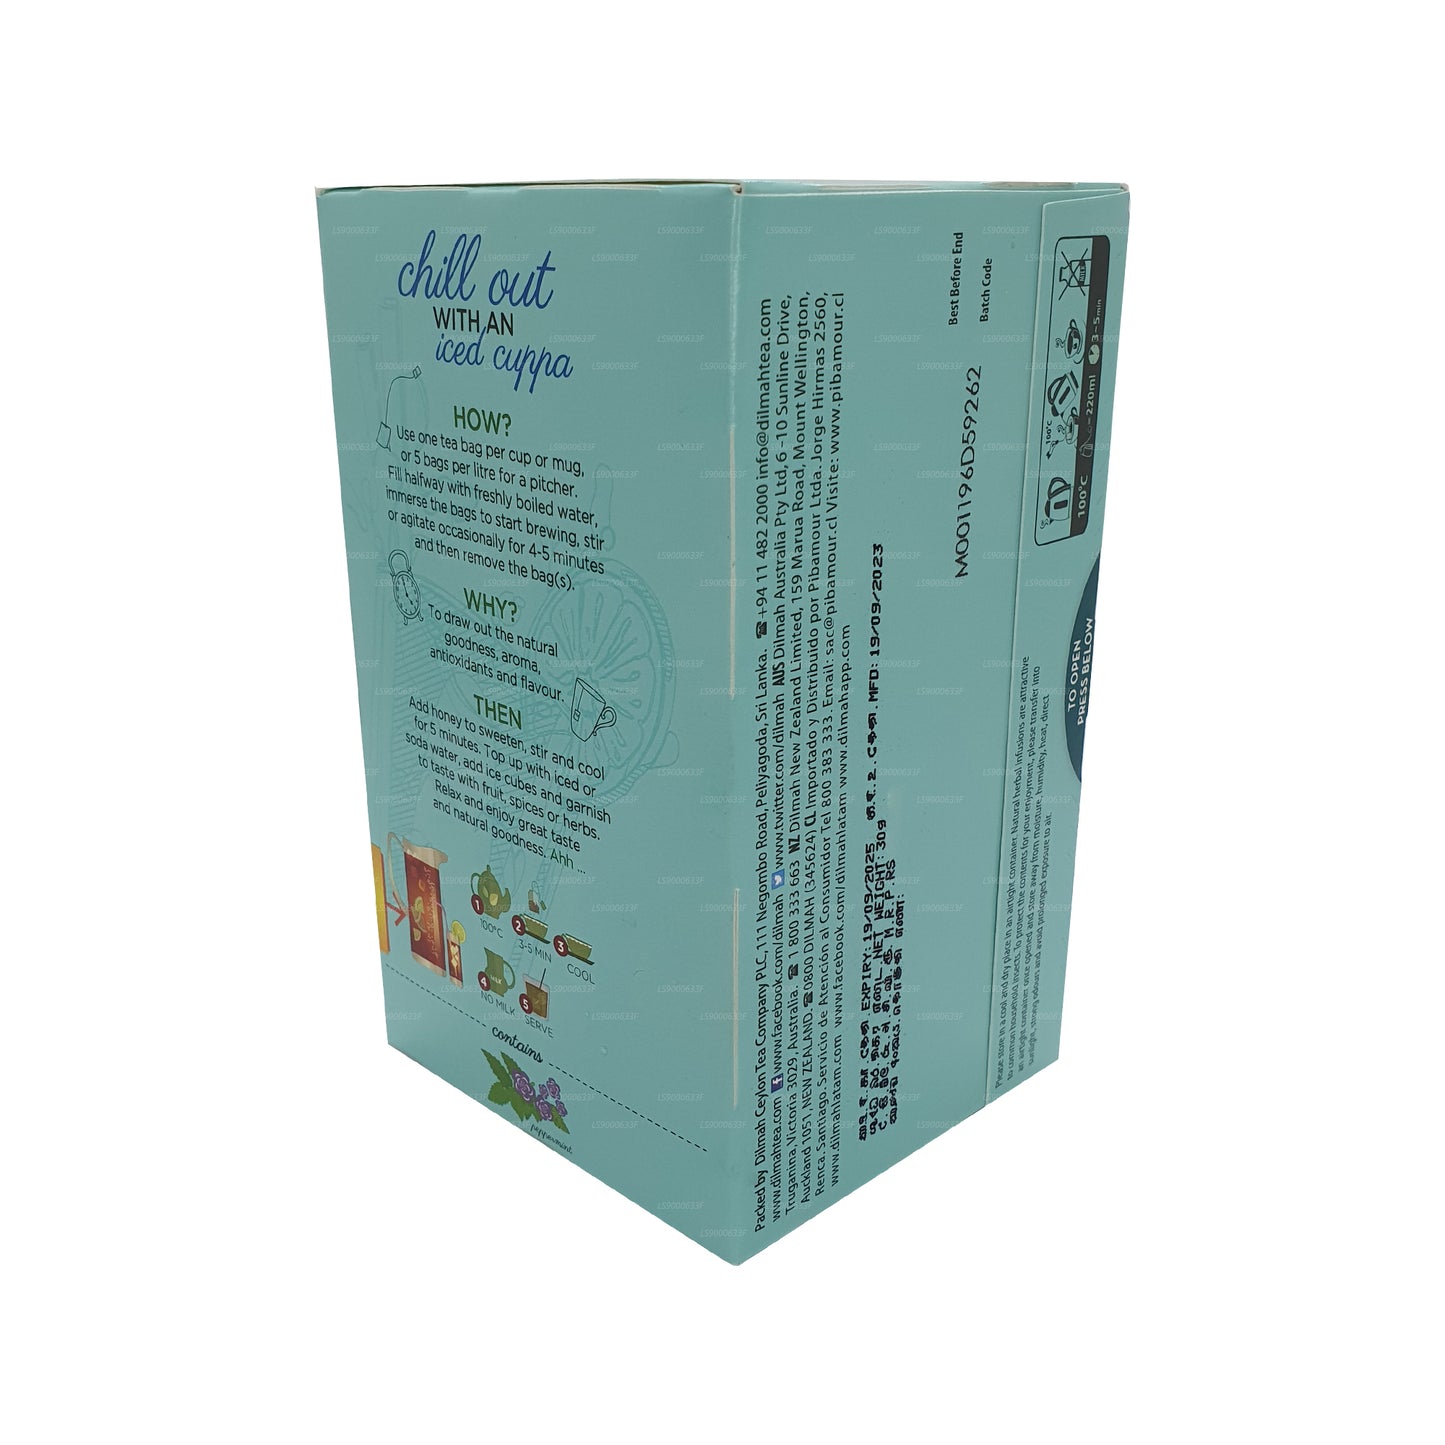 Натуральный настой натуральной мяты Dilmah (30 г) 20 пакетиков чая